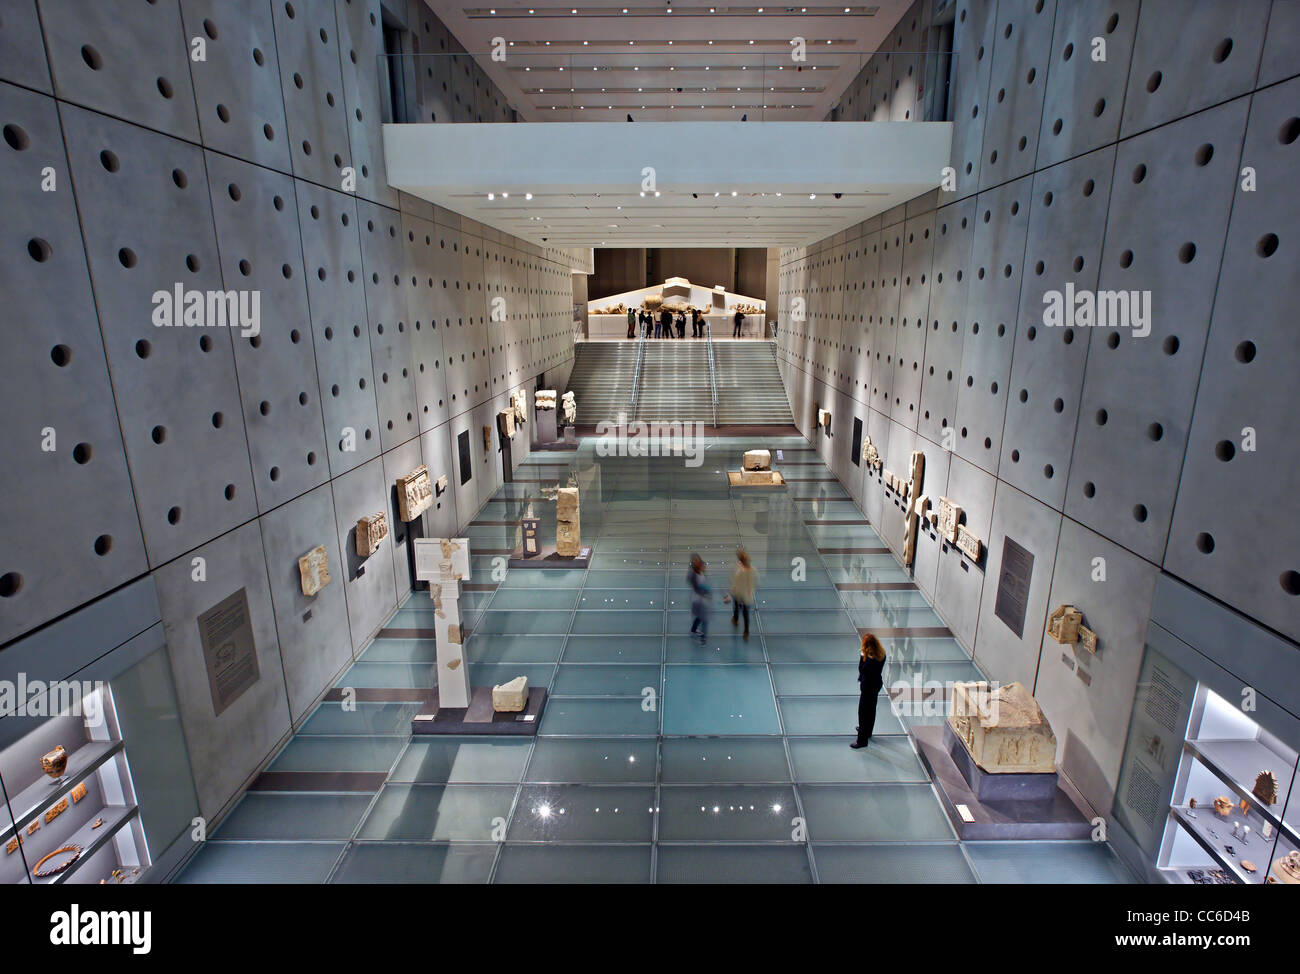 Die Galerie von den Hängen der Akropolis aus dem (neuen) Akropolis-Museum (Ebene 0). Athen, Griechenland. Stockfoto